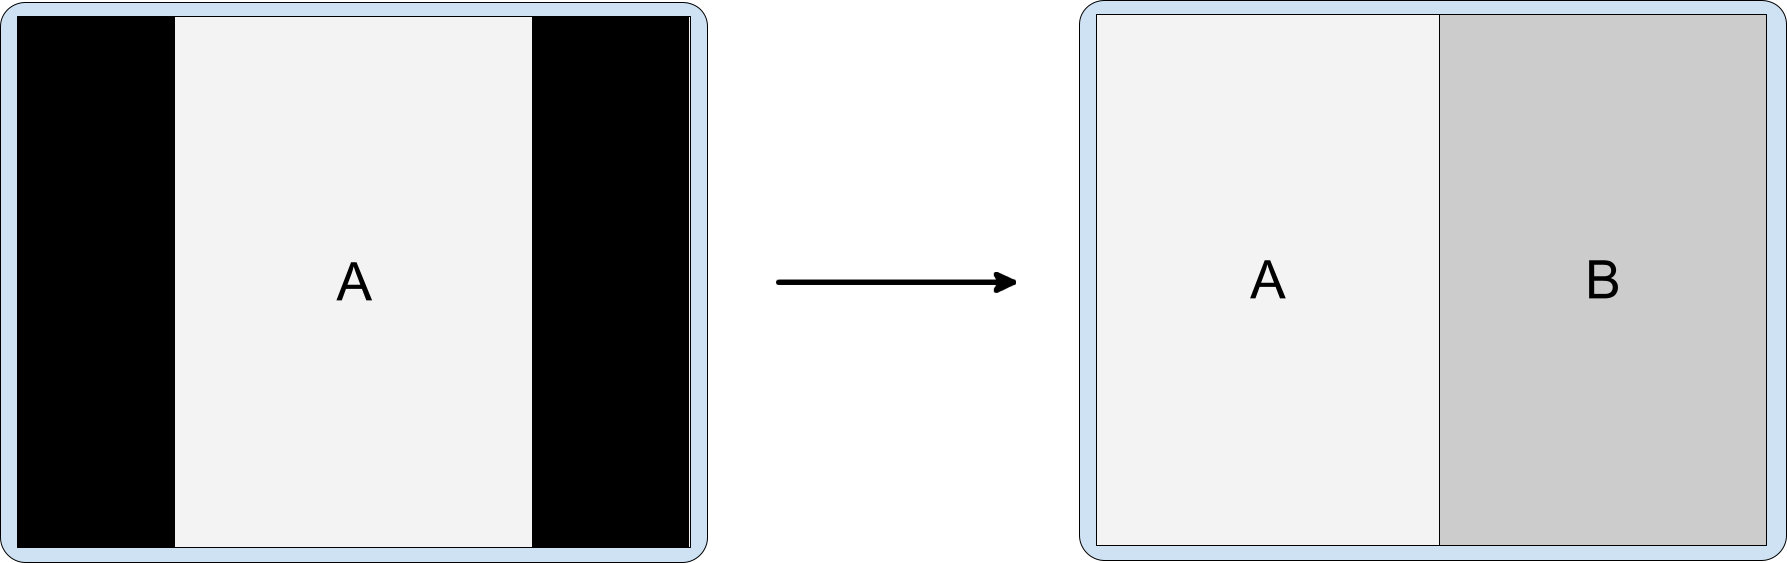 横向きディスプレイに、縦向き専用アプリのアクティビティの埋め込みを表示しています。レターボックス表示の縦向き専用アクティビティ A によって、埋め込みアクティビティ B が起動しています。